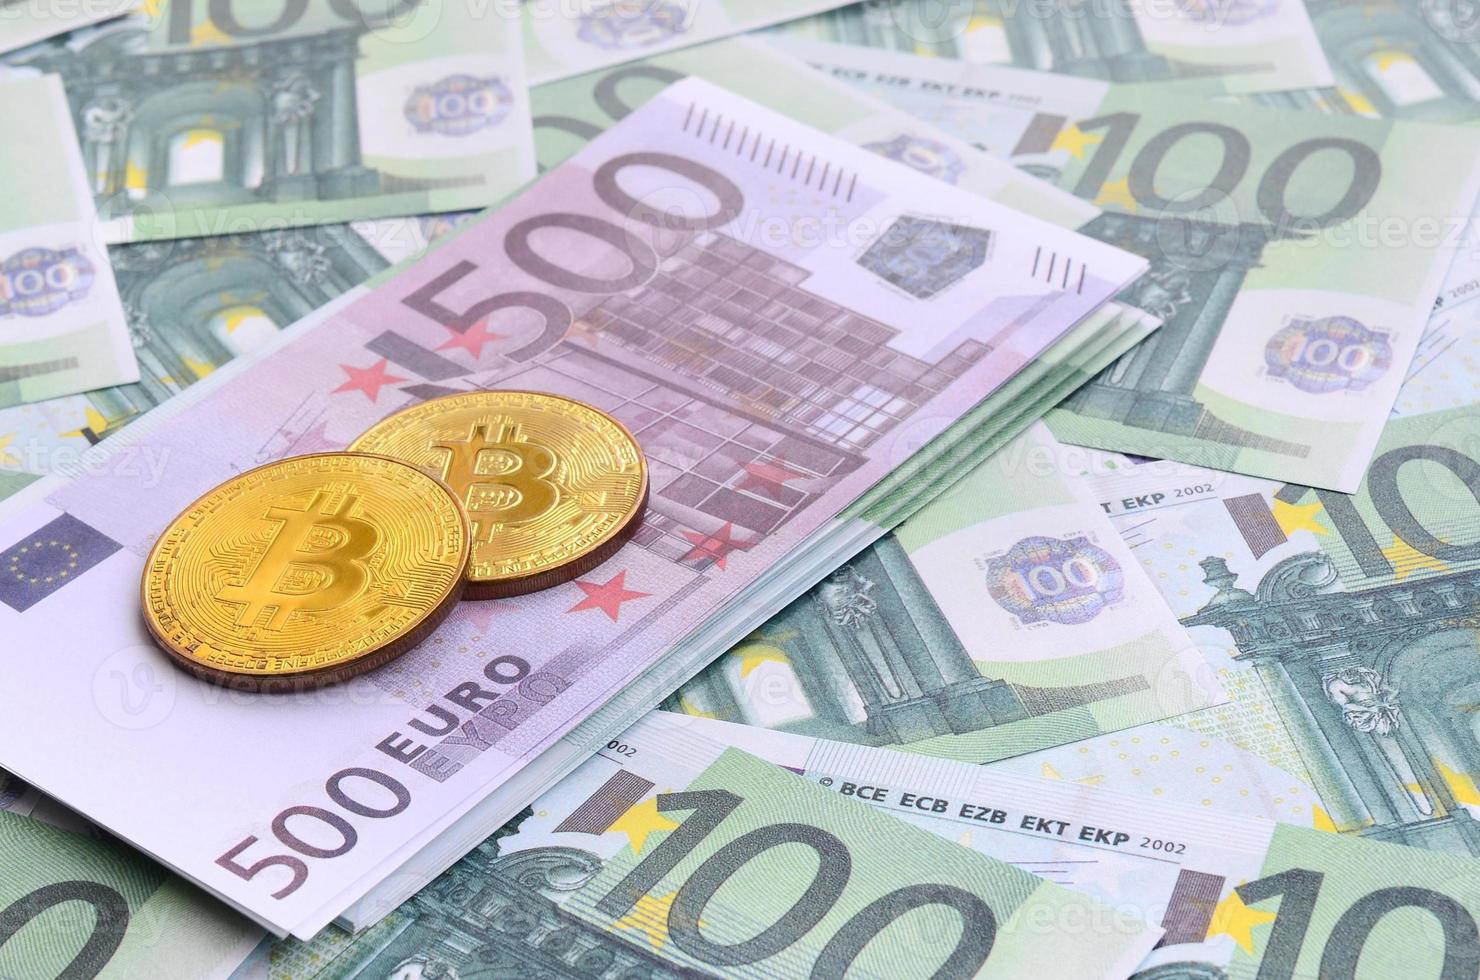 gyllene fysisk bitcoins är lögner på en uppsättning av grön monetär valörer av 100 euro. en massa av pengar former ett oändlig högen foto